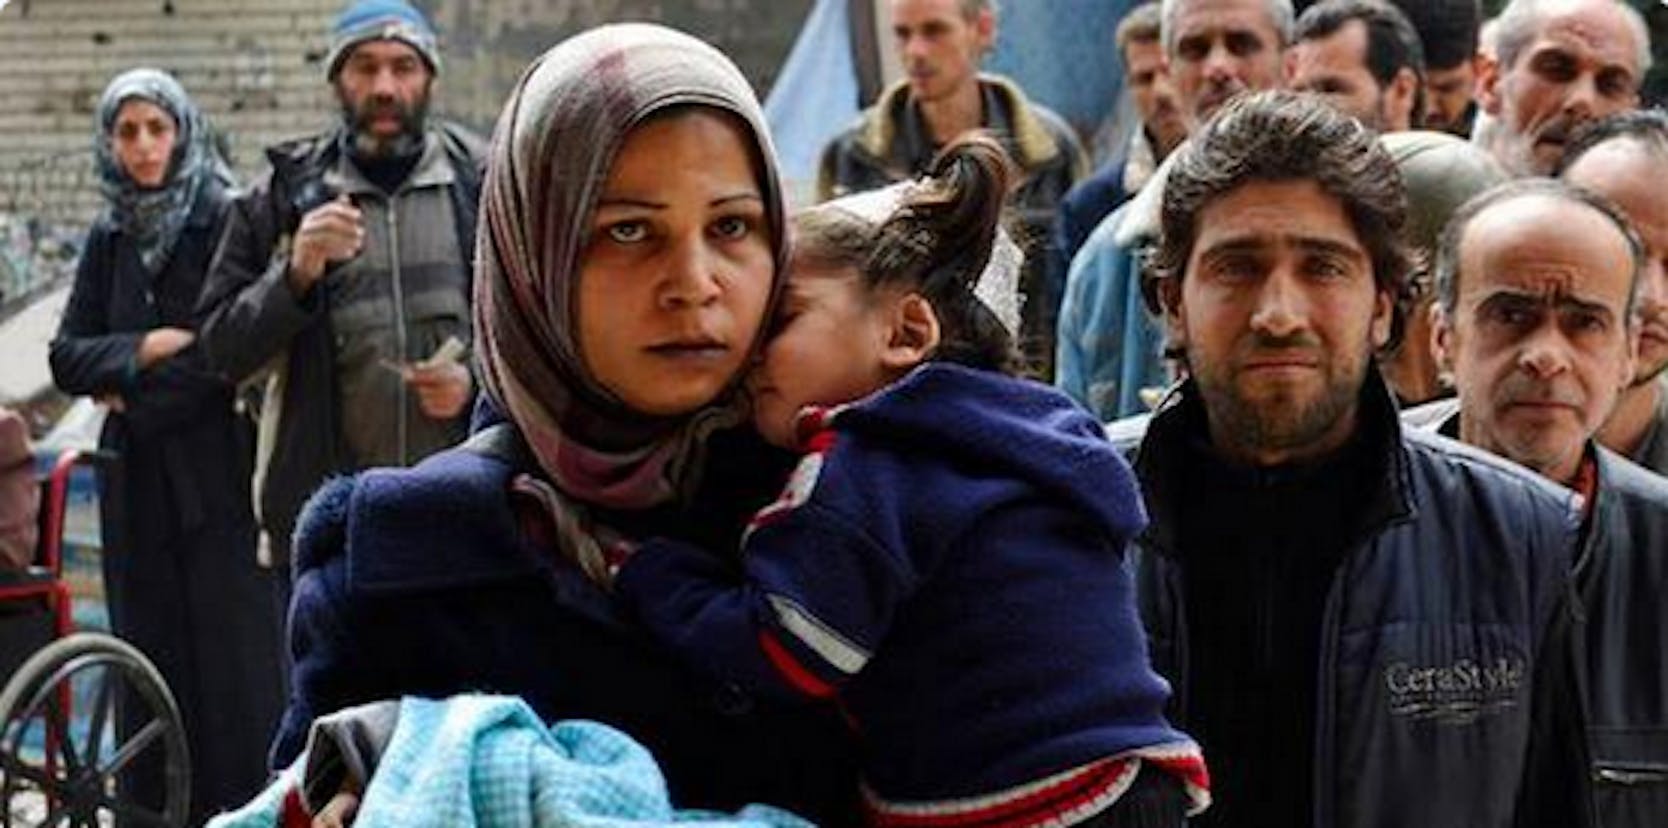 Civili palestinesi nel campo profughi di Yarmouk, nei pressi di Damasco (Siria) - ©Reuters